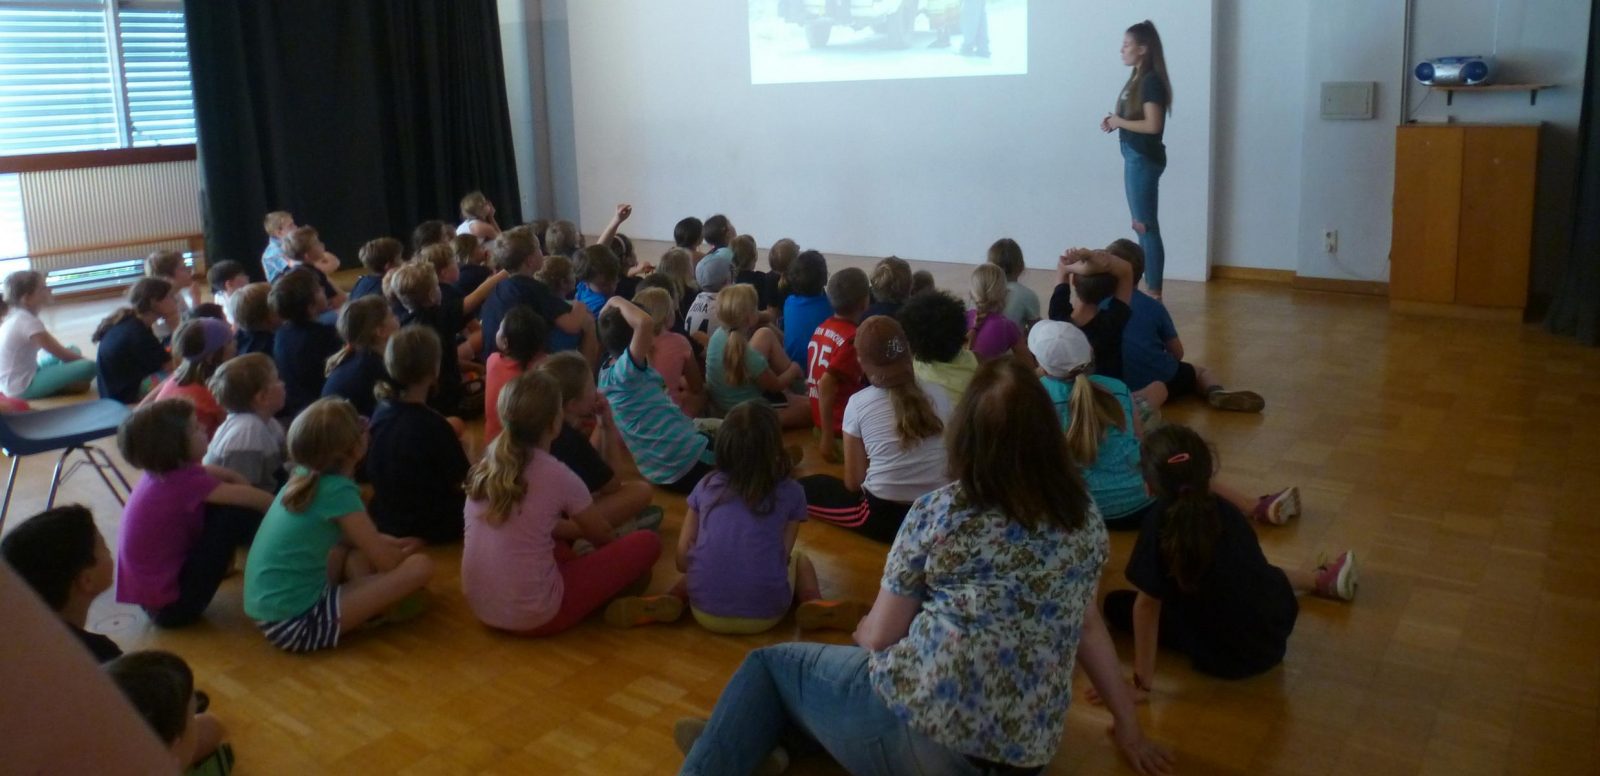 Infoveranstaltung in der Grundschule Planegg als Vorbereitung des Spendenlaufs zugunsten von Emmaberg